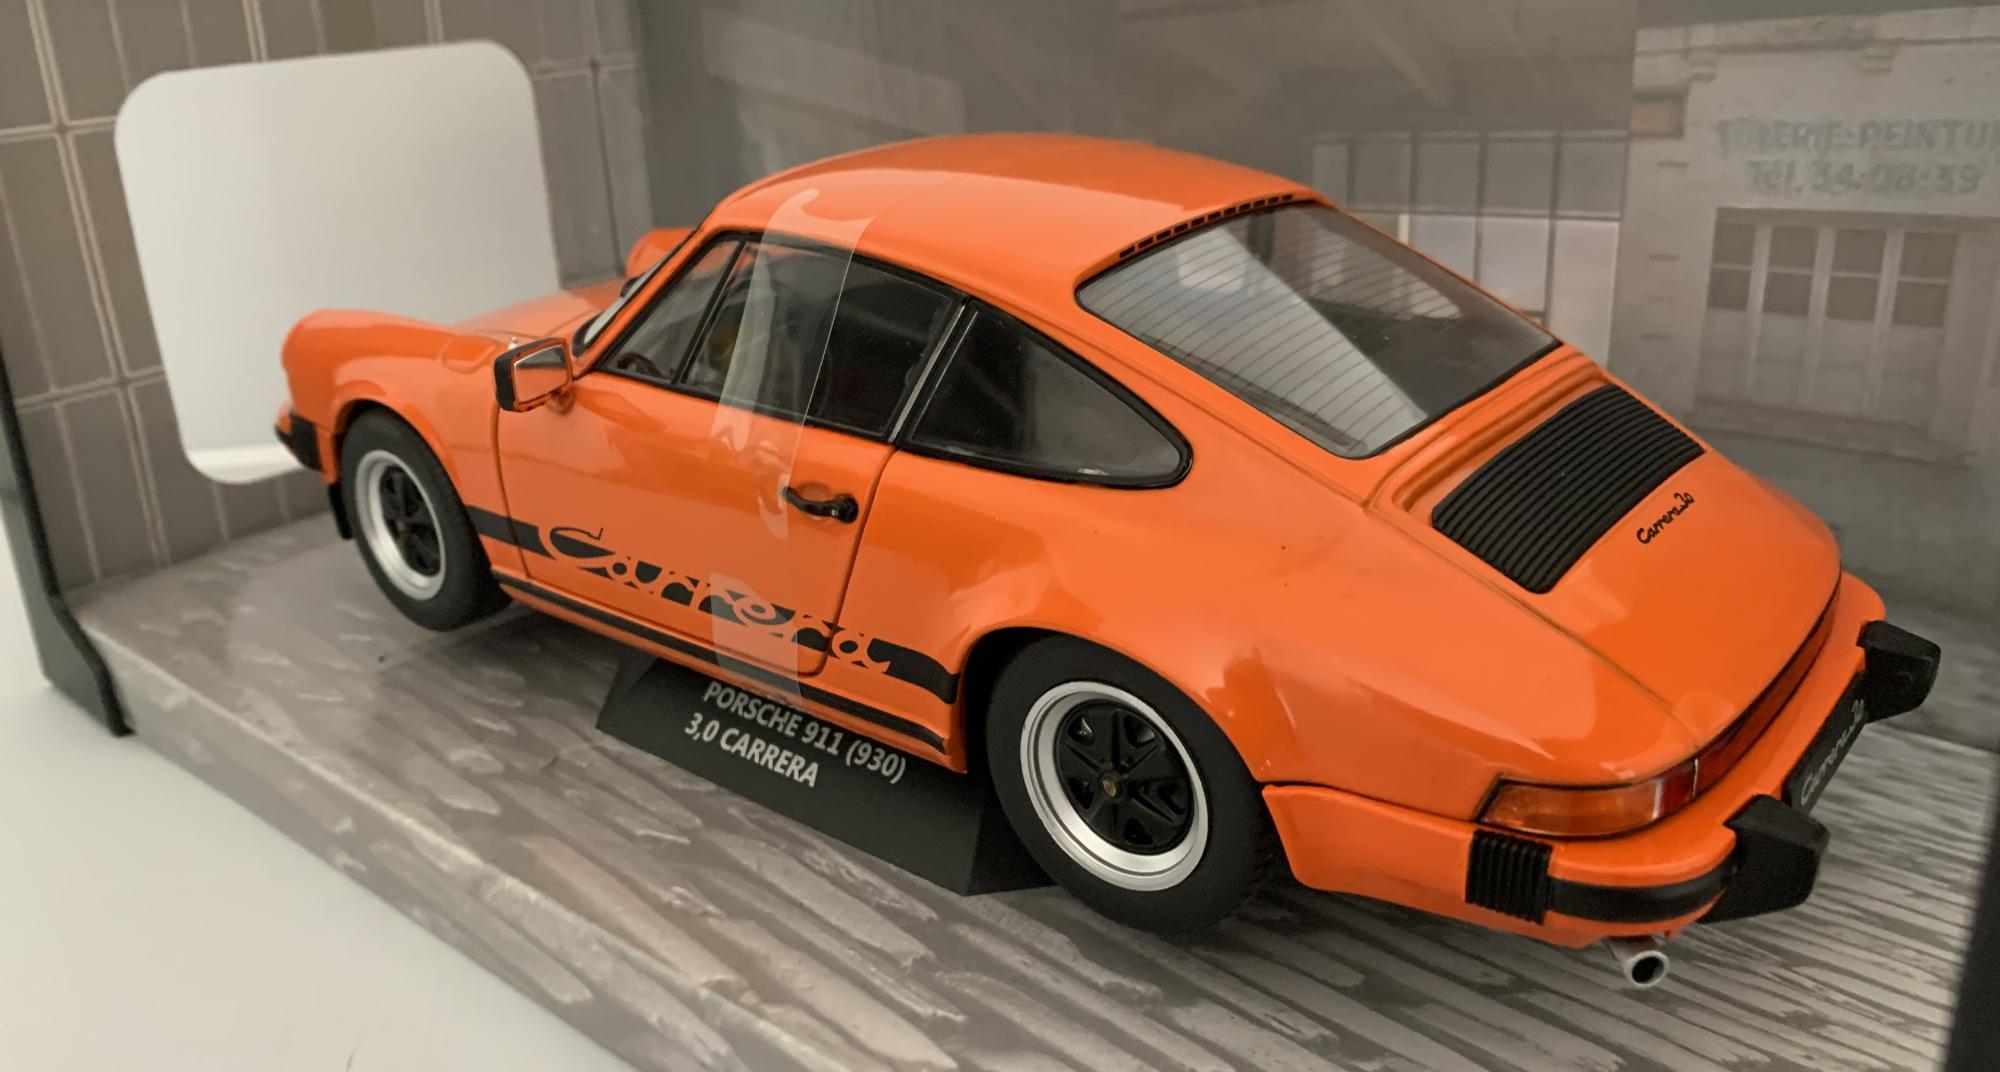 Porsche 911  carrera, gulf orange 1977, 1:18 scale model from Solido,  1802605